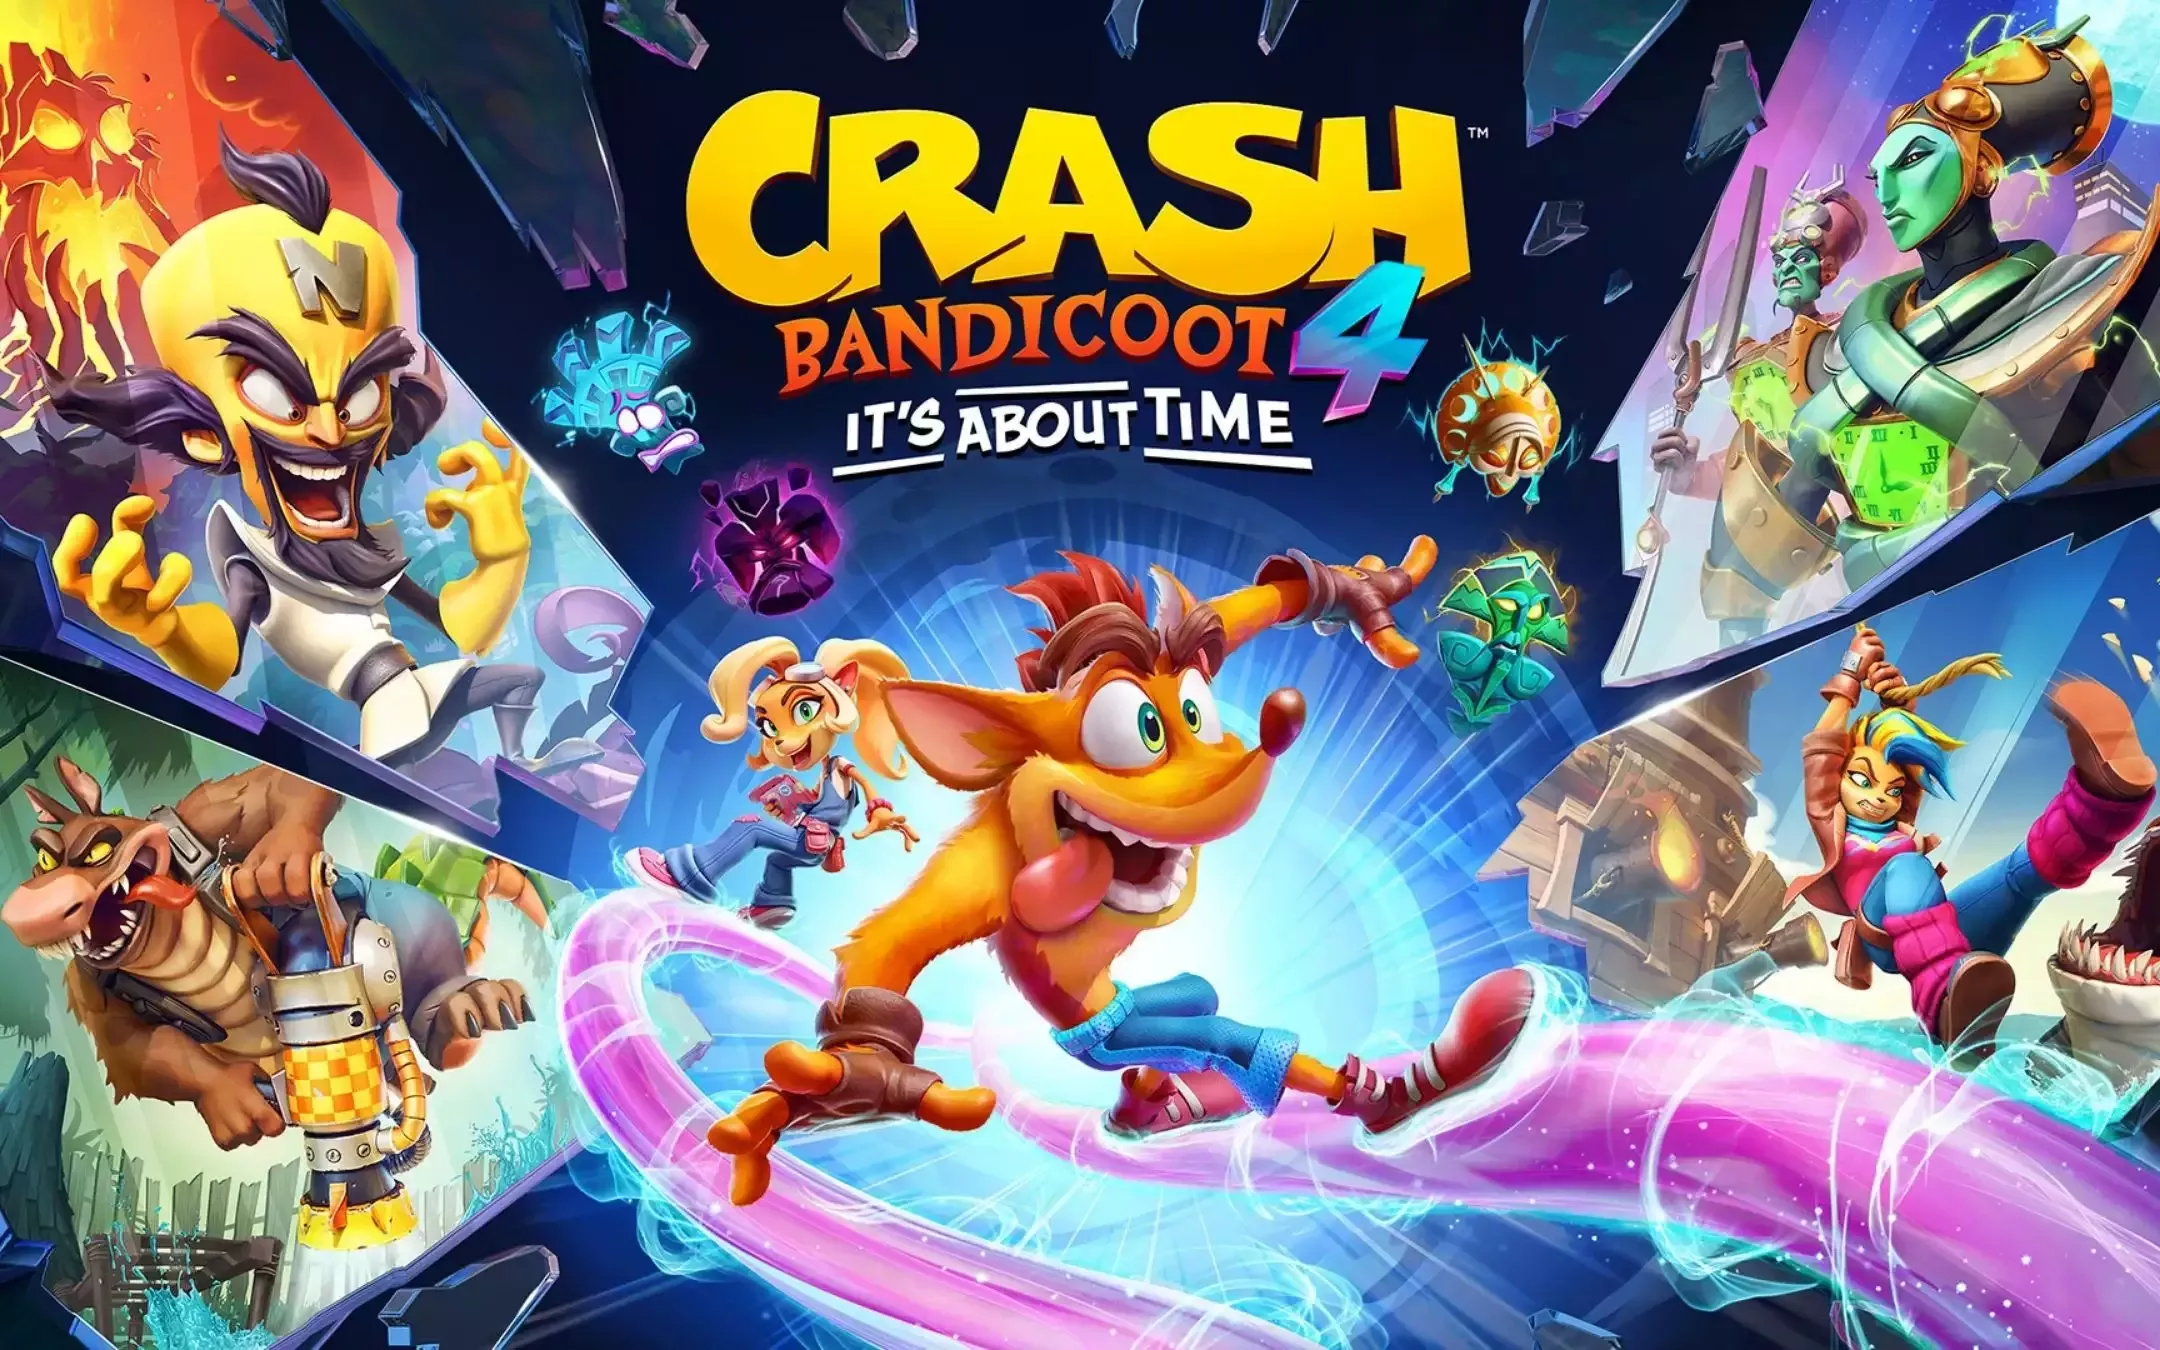 Nostalgia time con Crash Bandicoot per PS4: approfitta dell'offerta (-44%)